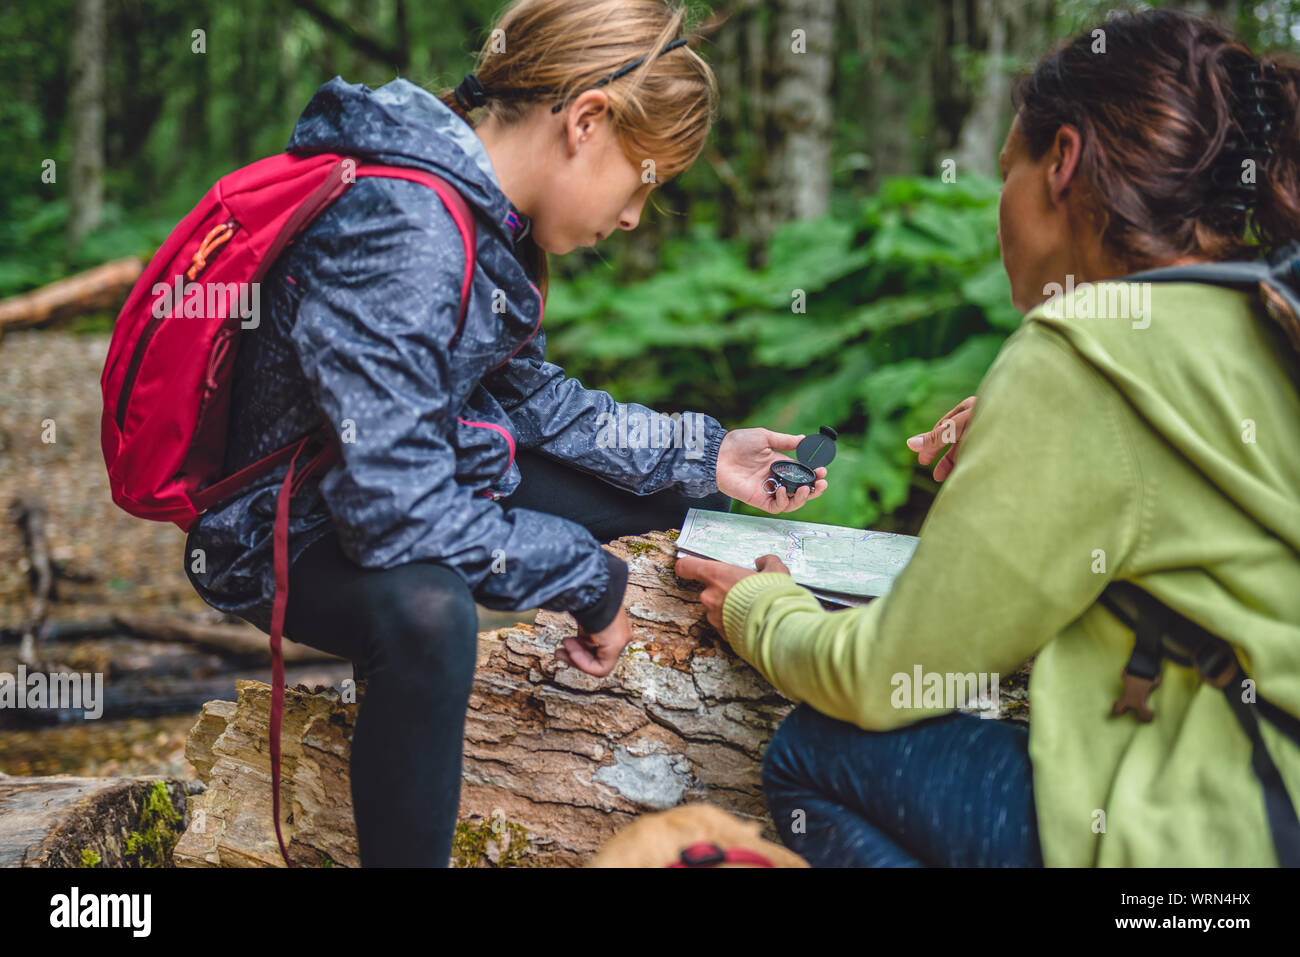 Mère et fille avec un chien en randonnée dans la forêt et à l'aide de boussole et carte pour naviguer Banque D'Images